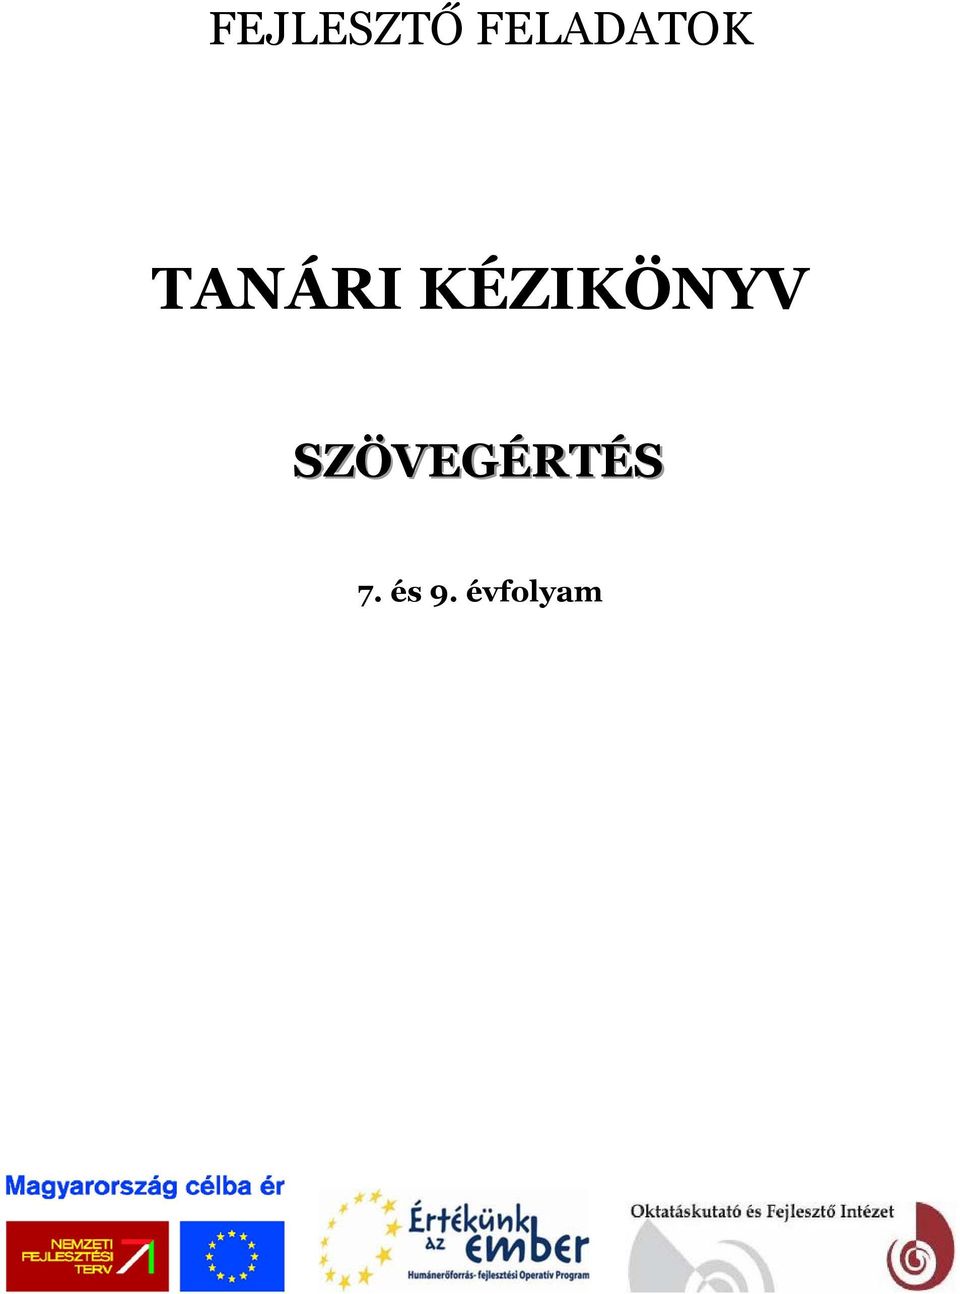 FEJLESZTŐ FELADATOK TANÁRI KÉZIKÖNYV. 7. és 9. évfolyam - PDF Ingyenes  letöltés